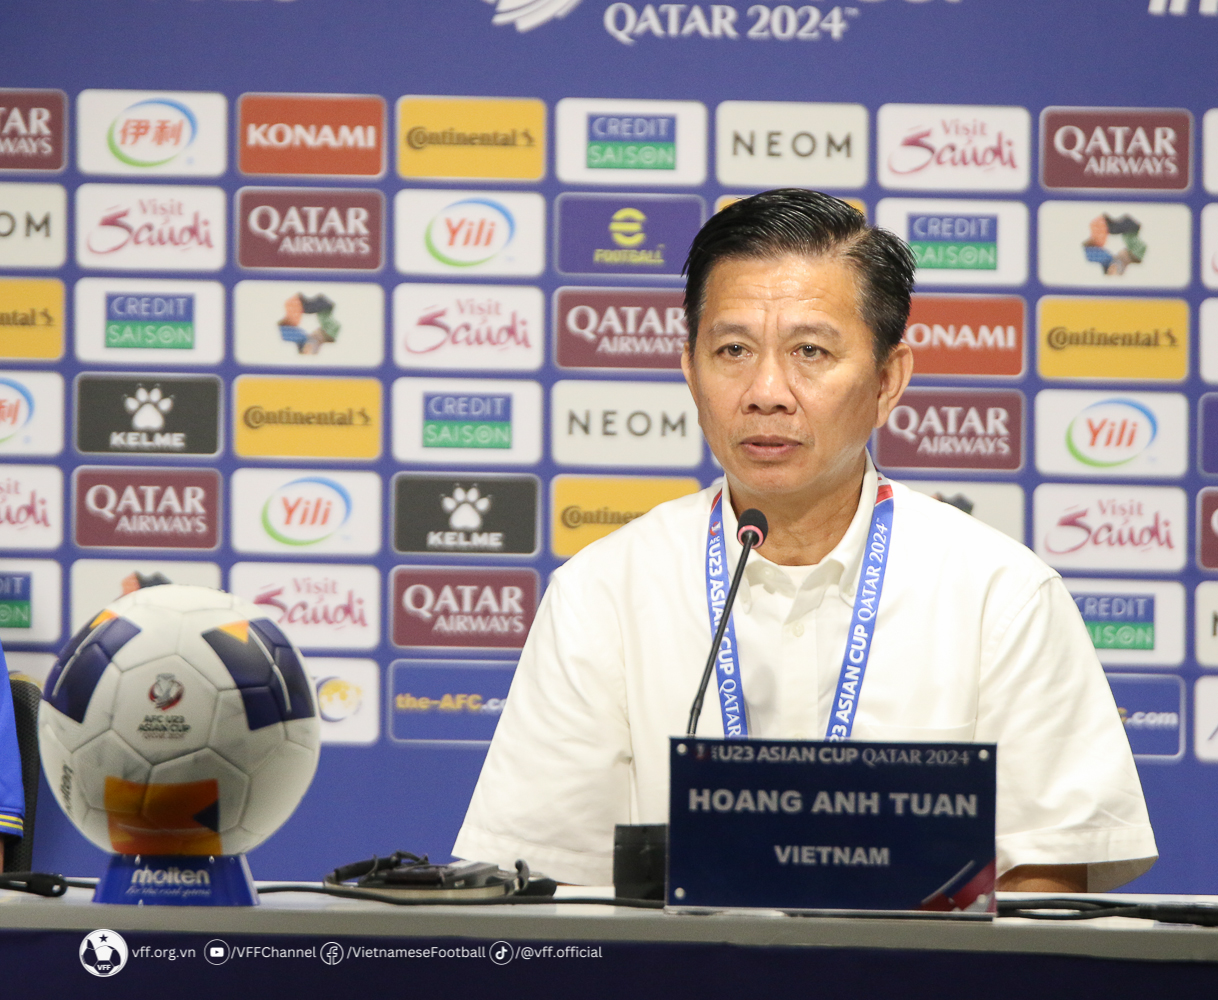 HLV trưởng Hoàng Anh Tuấn: “Chiến thắng của U23 Việt Nam là xứng đáng”